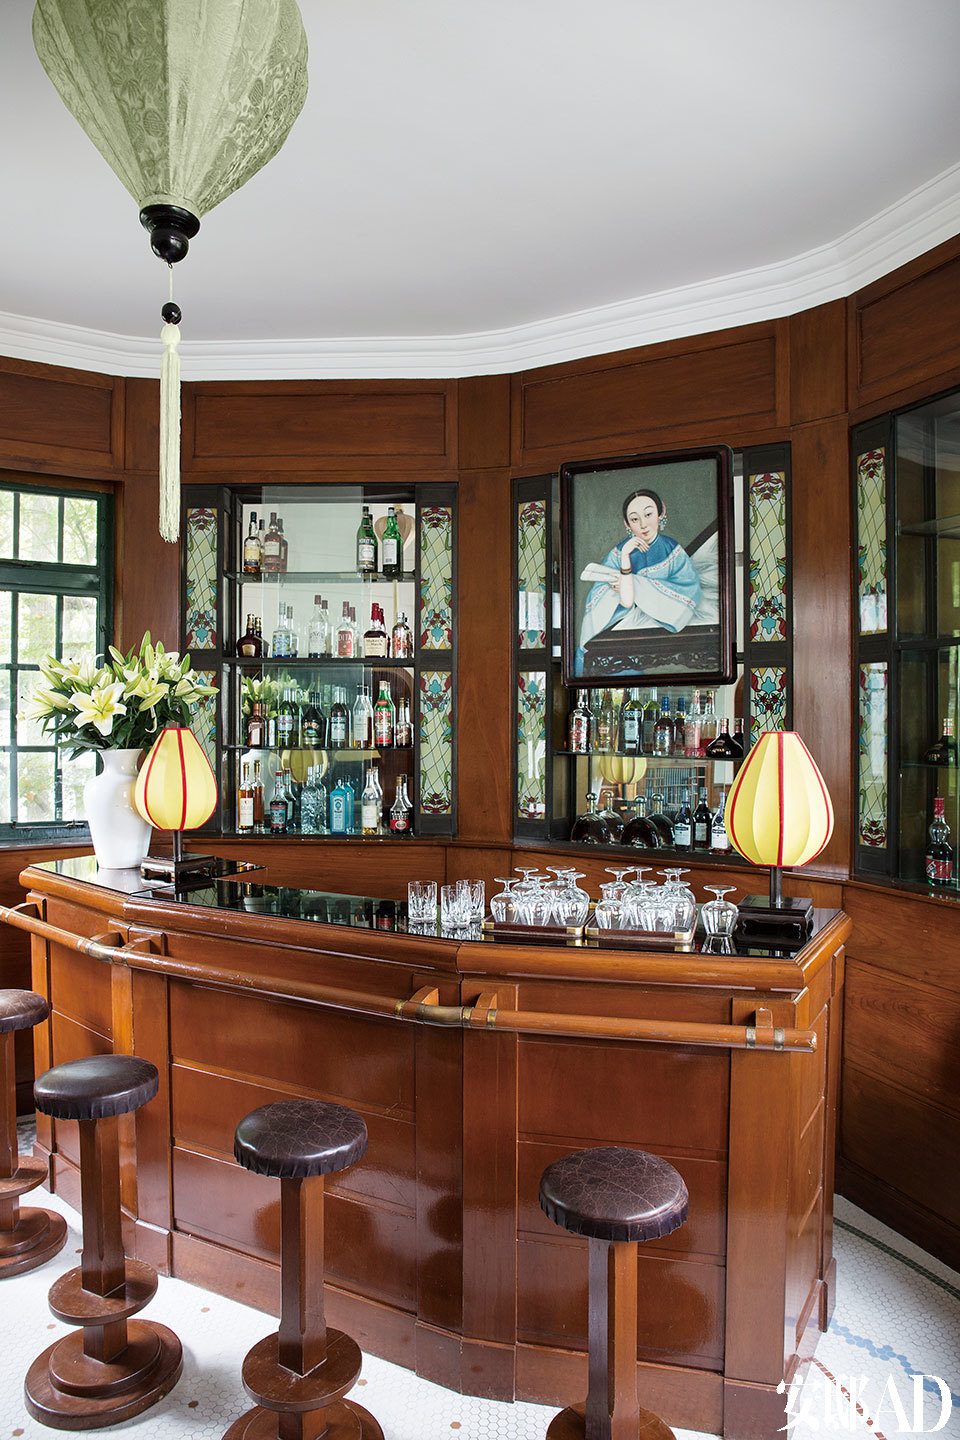 上世纪20年代风格木嵌板吧台，4把酒吧椅非常适合休憩。酒 吧后面挂着一幅晚清女人画像。